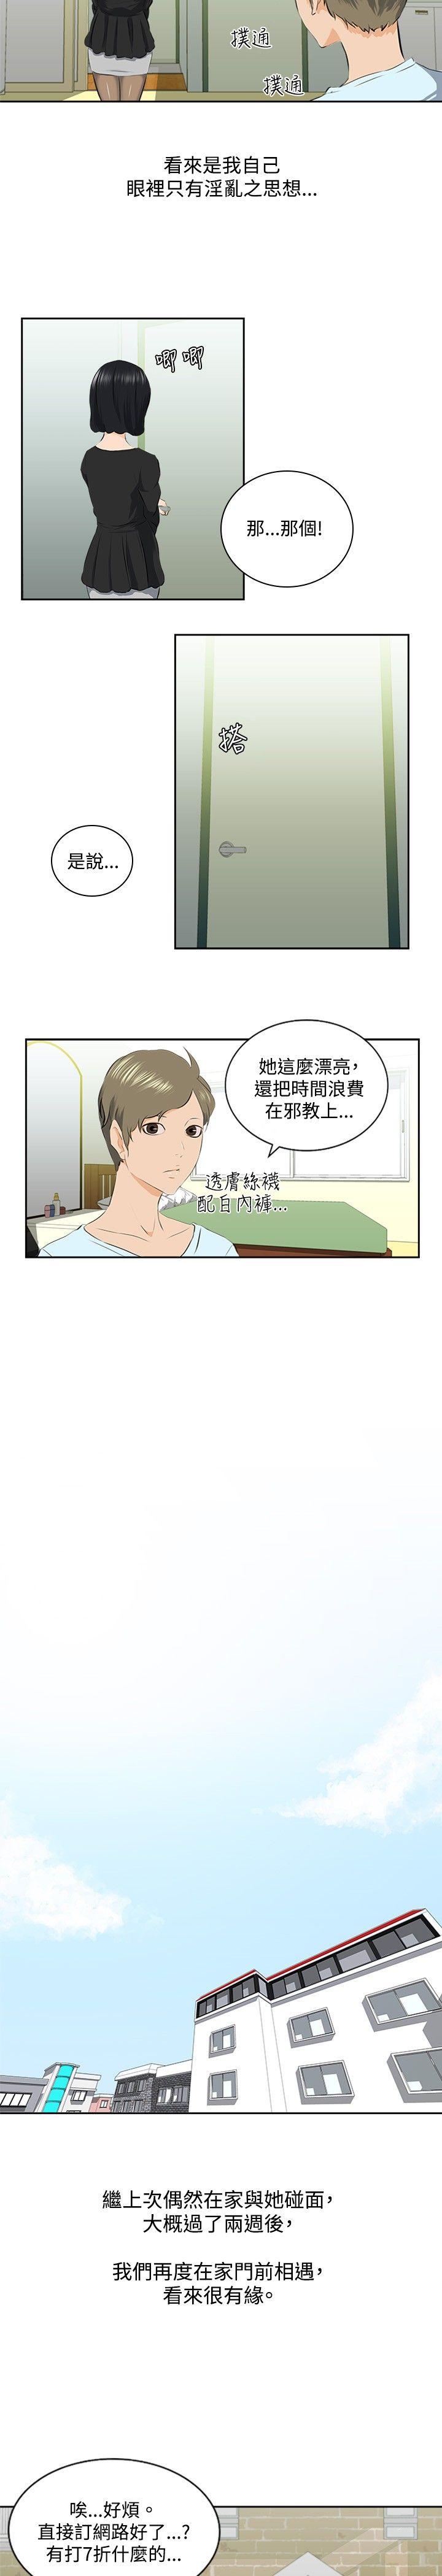 秘密Story  邪教之女(中) 漫画图片2.jpg